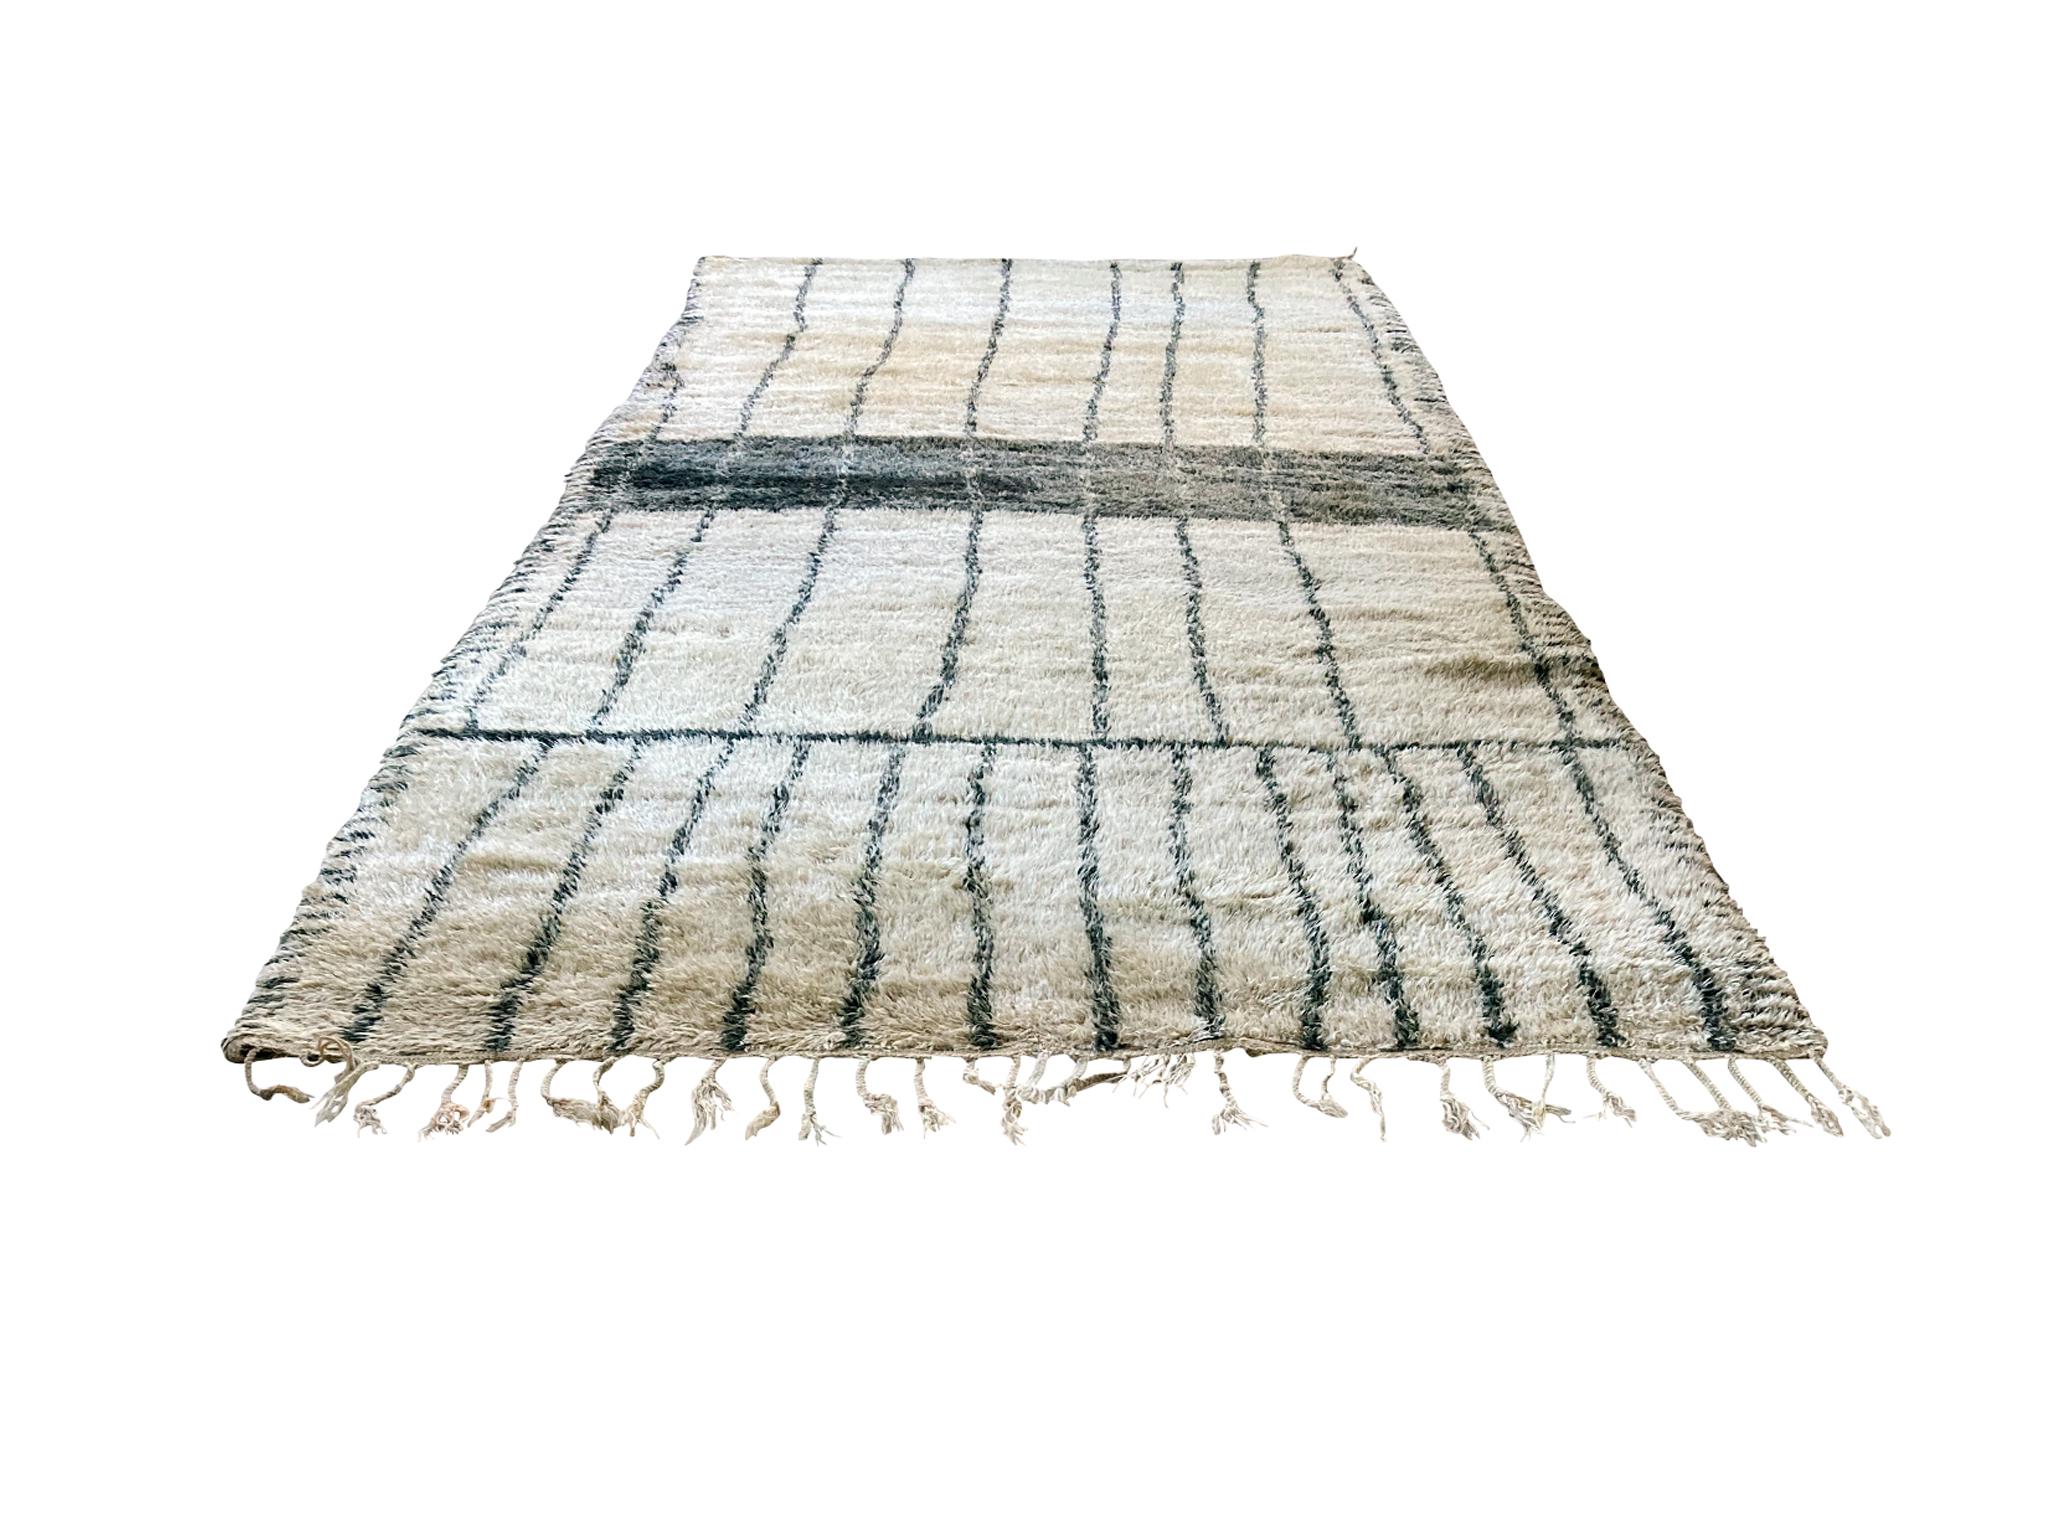 Ce grand tapis marocain Beni Ourain a été noué à la main au milieu du 20e siècle. Son design présente des rayures noires audacieuses qui s'étendent sur toute la longueur du tapis. Le tapis a été récemment nettoyé.

Dimensions :
6' 2